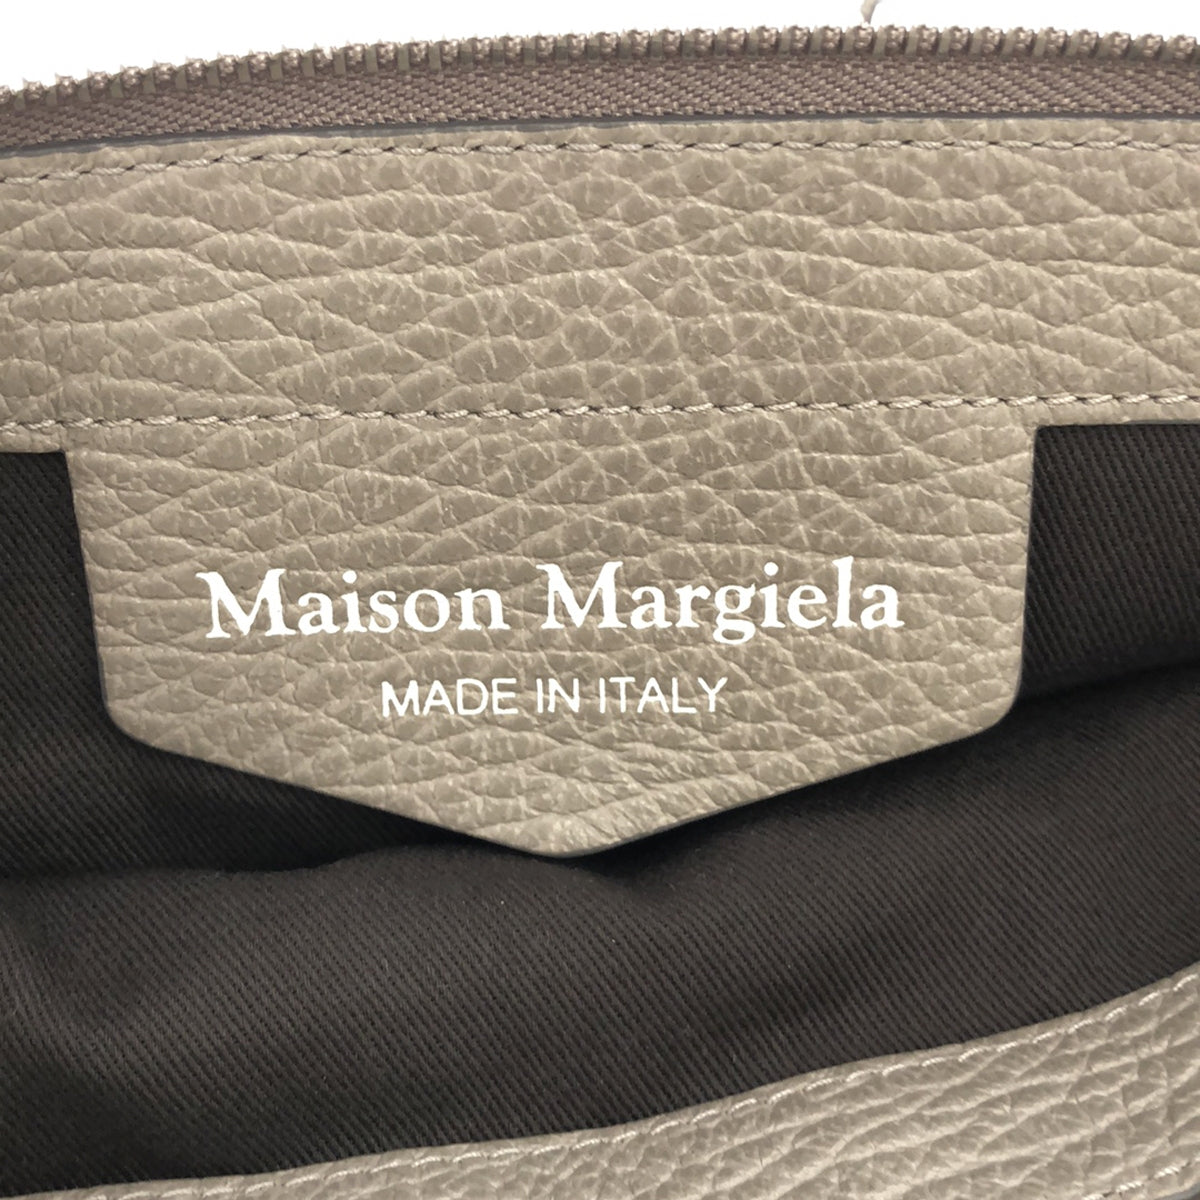 Maison Margiela / メゾンマルジェラ | 2020AW | 5AC ミディアム クロスボディ ショルダーバッグ |